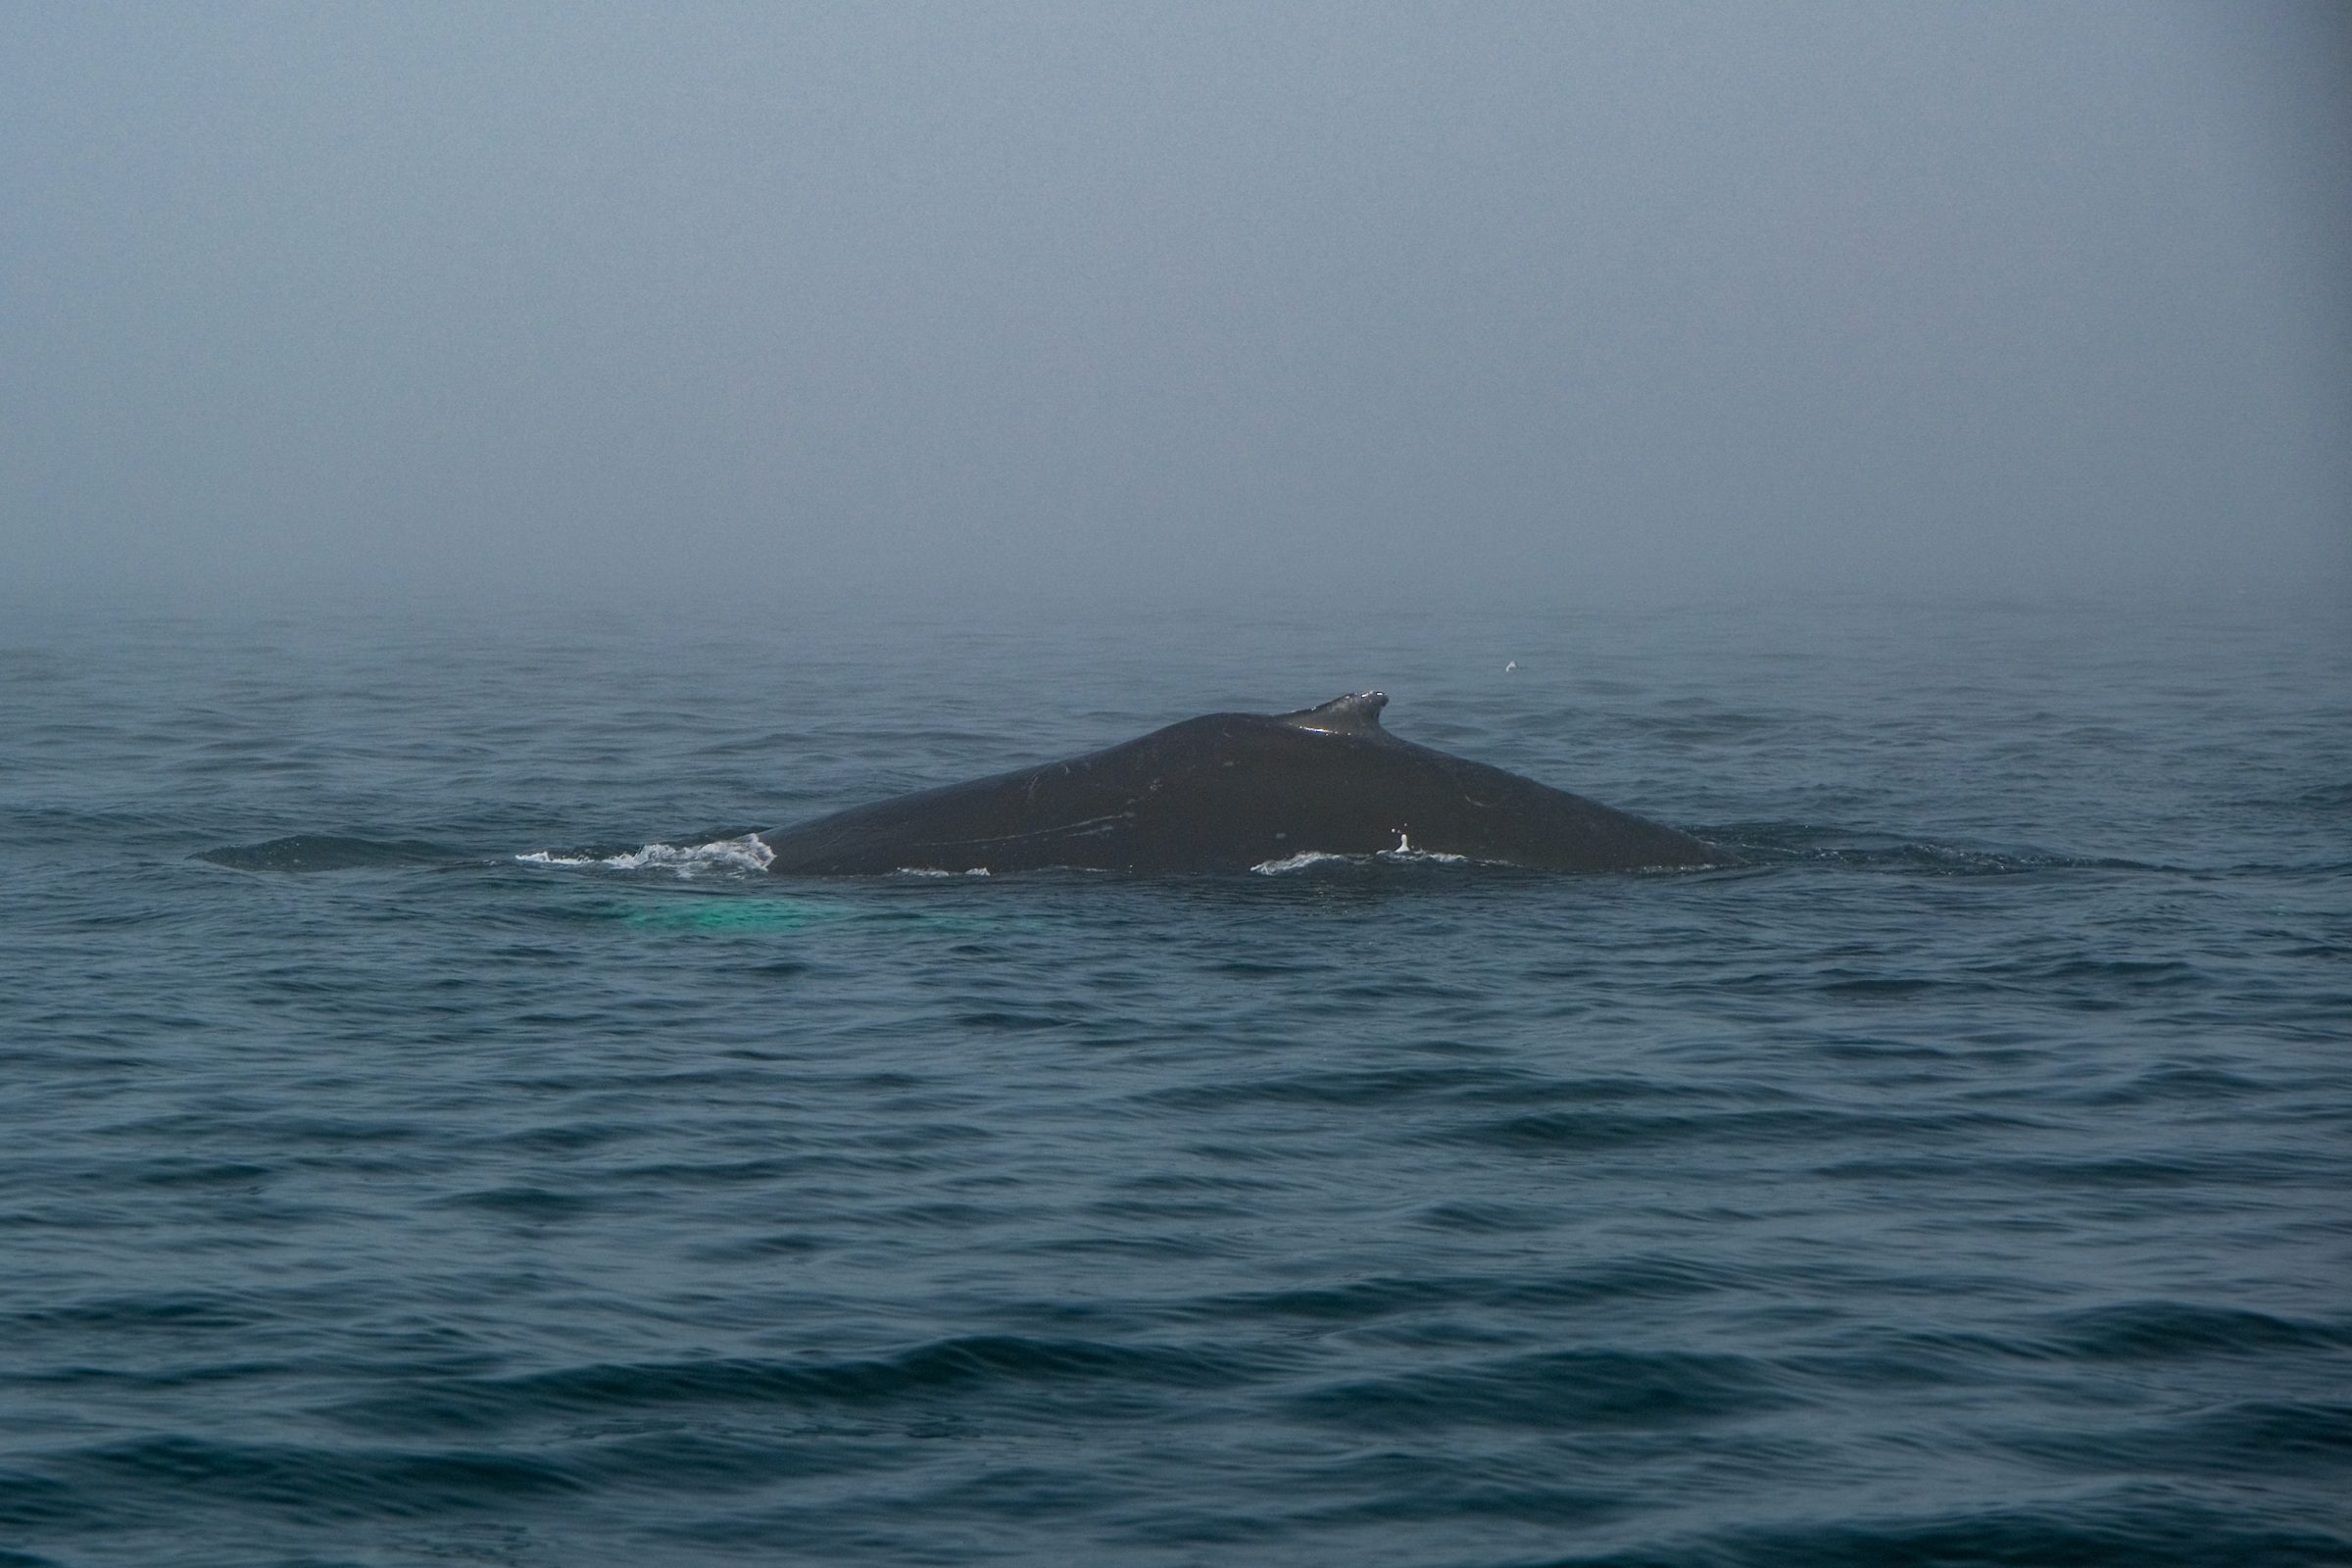 De humpback whale gaat een diepe duik nemen, te zien aan de kromme rug